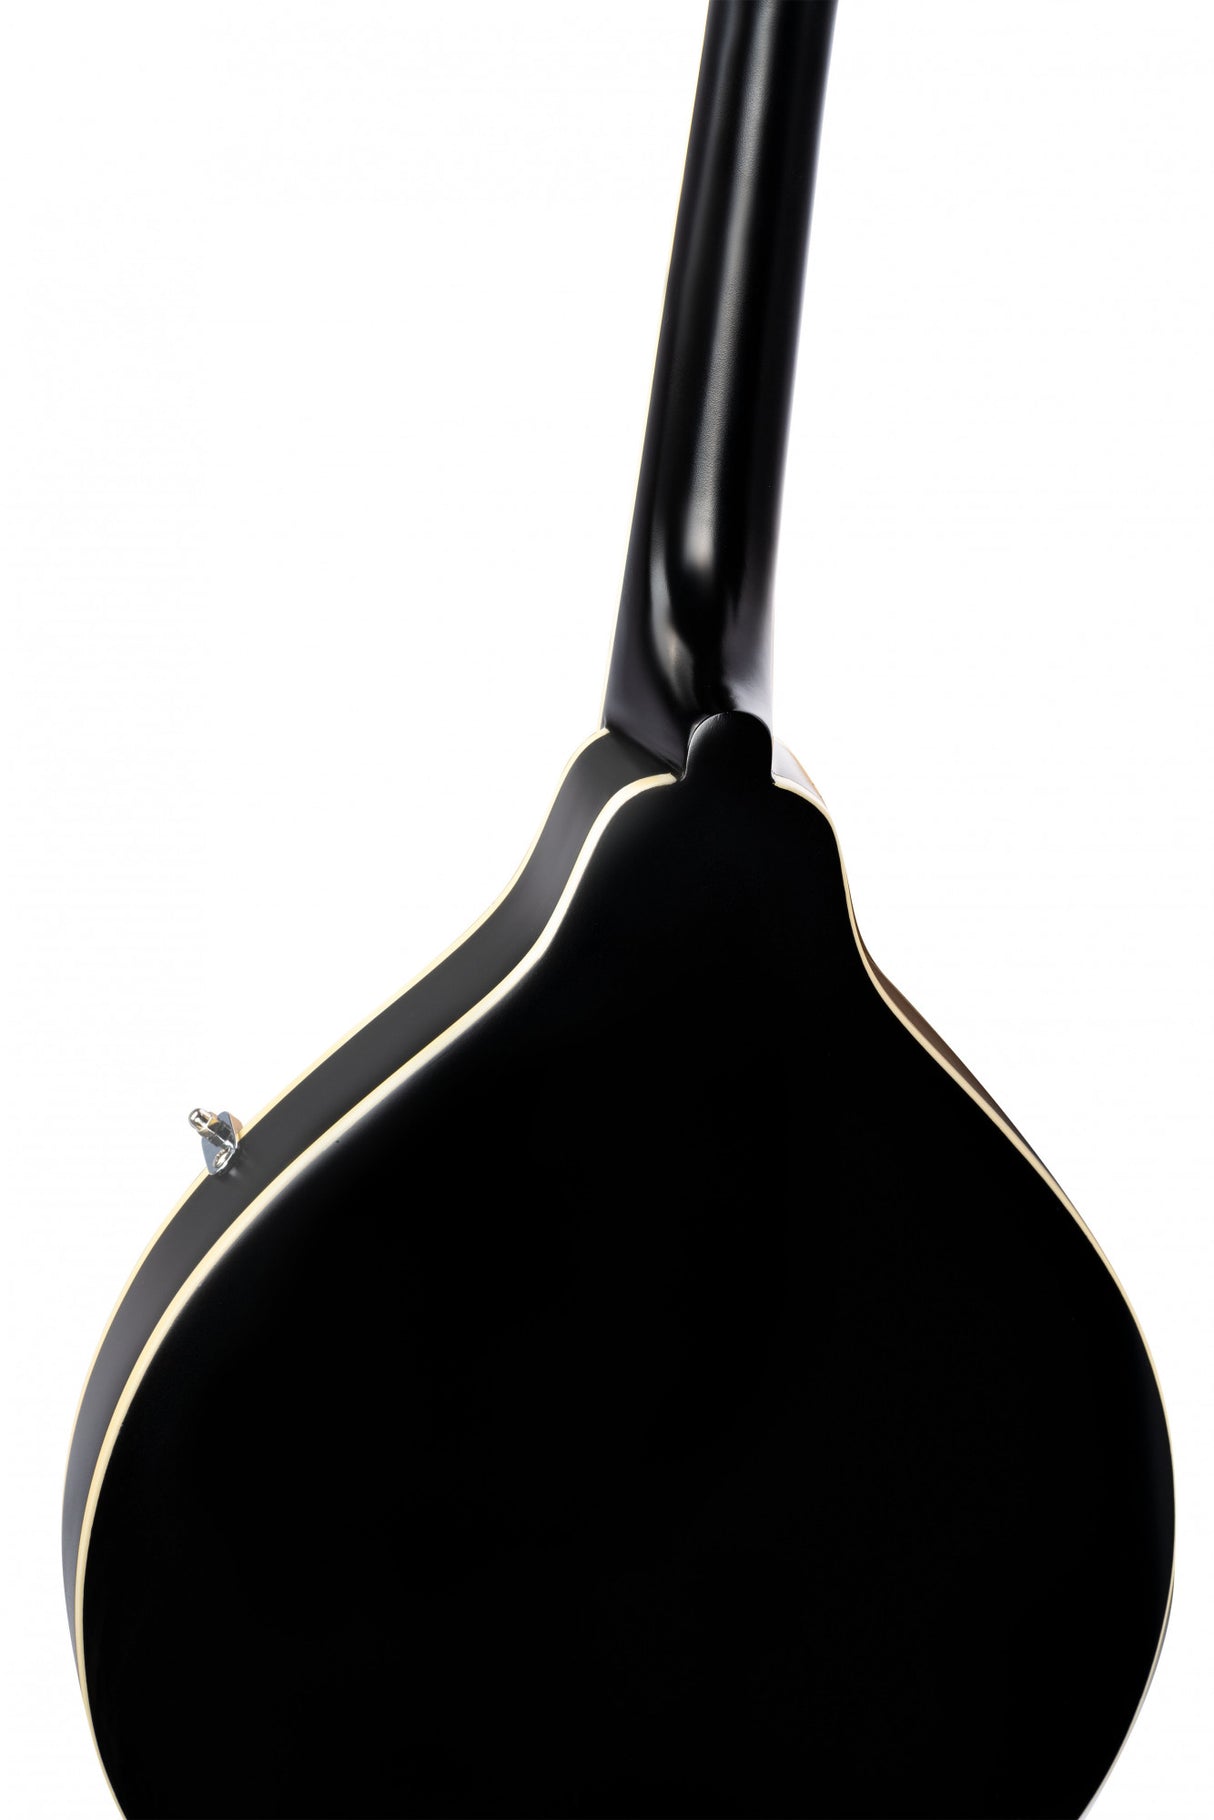 ORTEGA A-Style Series Mandoline - schwarz inkl. Tasche - Musik-Ebert Gmbh